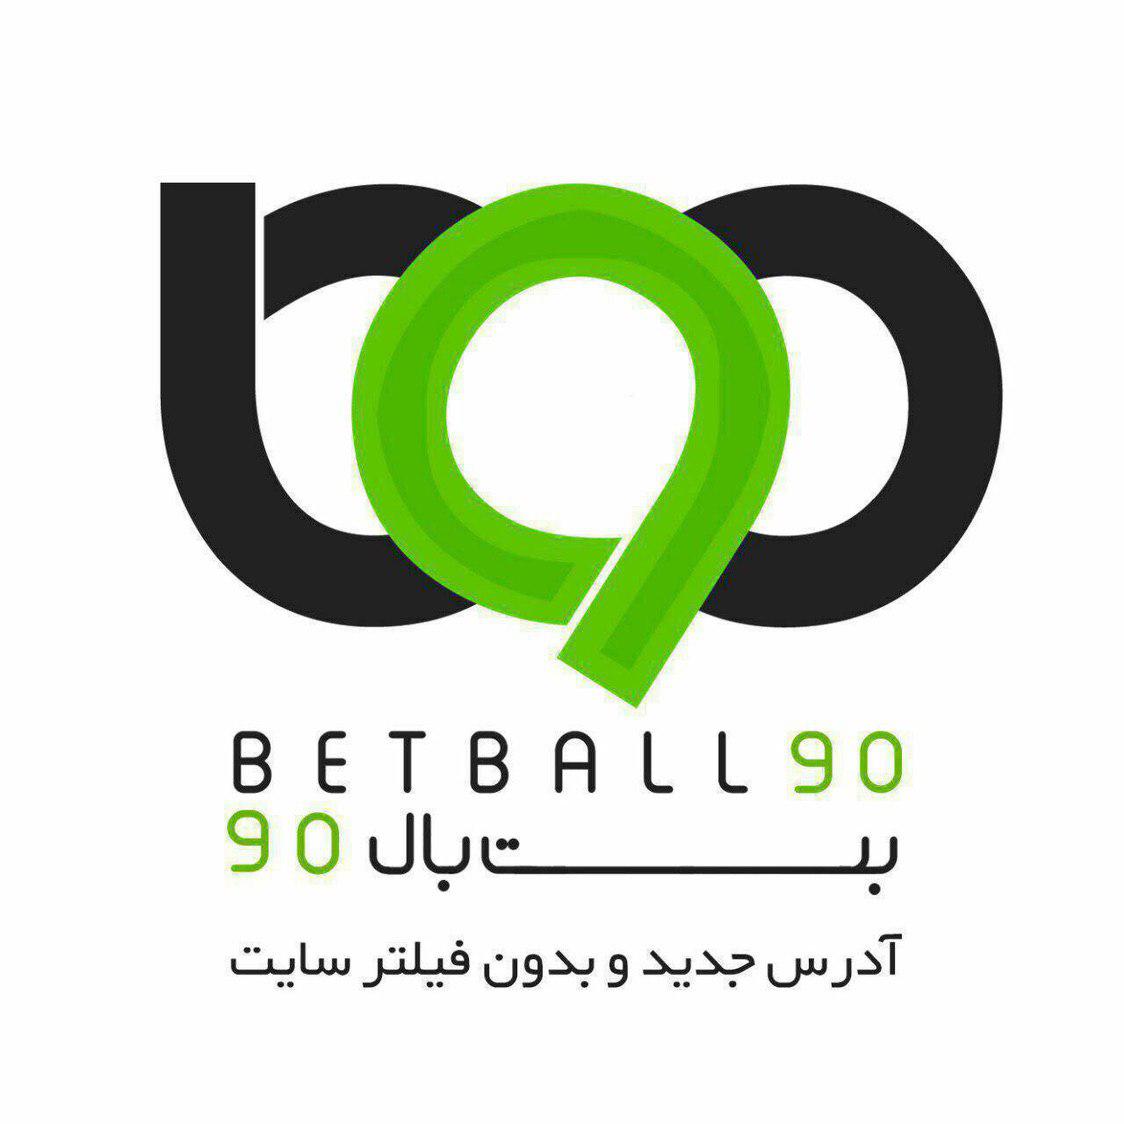 بت بال 90 - betball90 - شرطبندی فوتبال